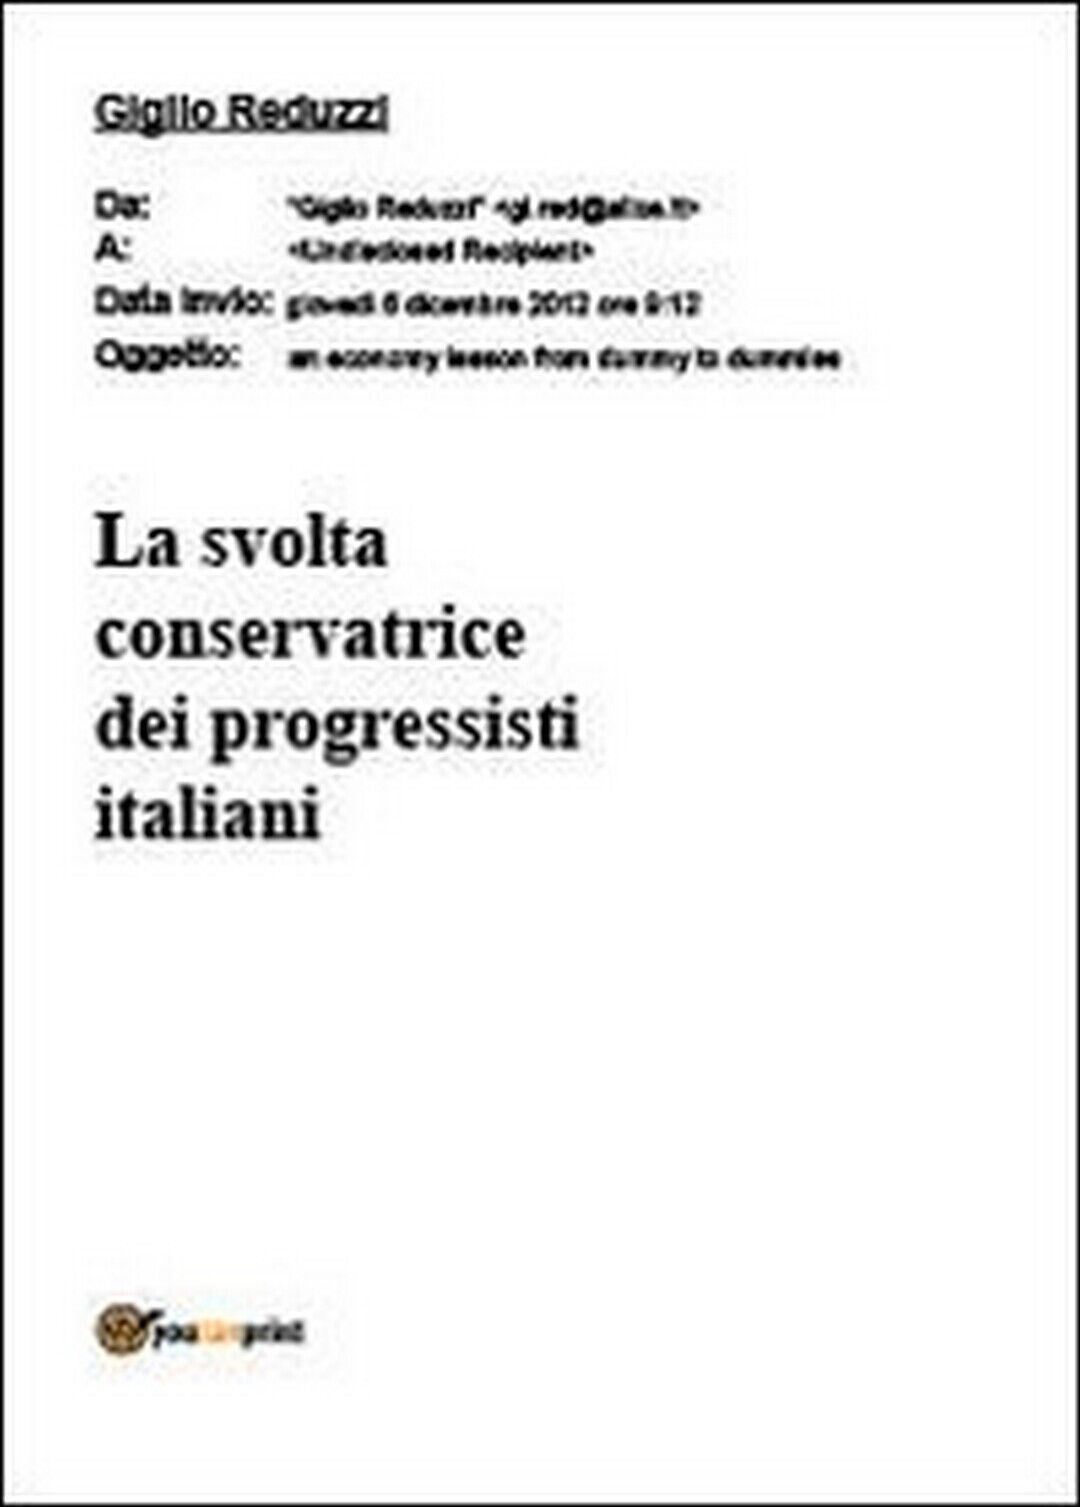 La svolta conservatrice dei progressisti italiani,  di Giglio Reduzzi,  2012